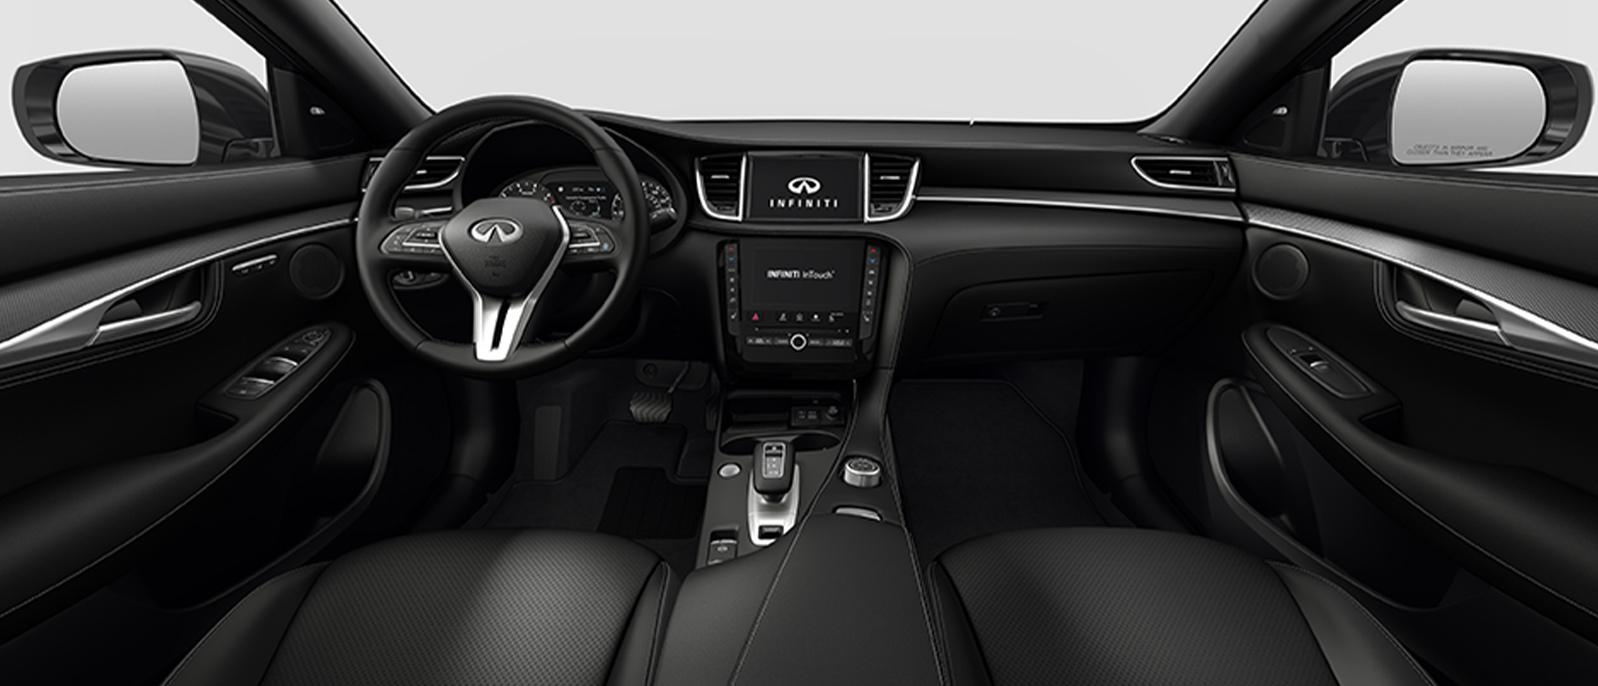 INFINITI QX55 Luxe trim interior in Graphite color scheme.